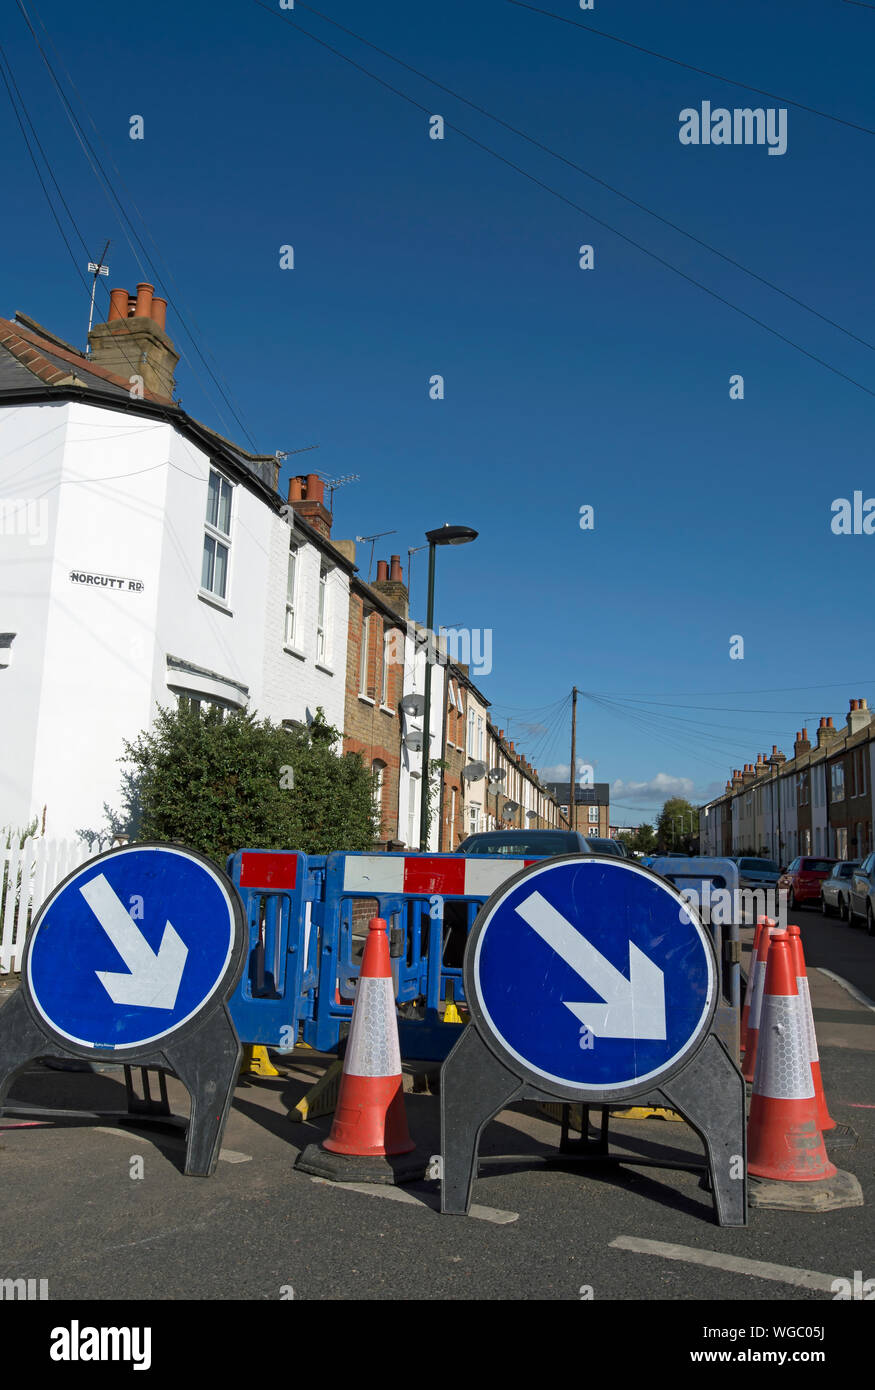 British azul y blanco, manténgase a la derecha, las señales de la carretera en una reparación de caminos en Twickenham, Middlesex, Inglaterra Foto de stock